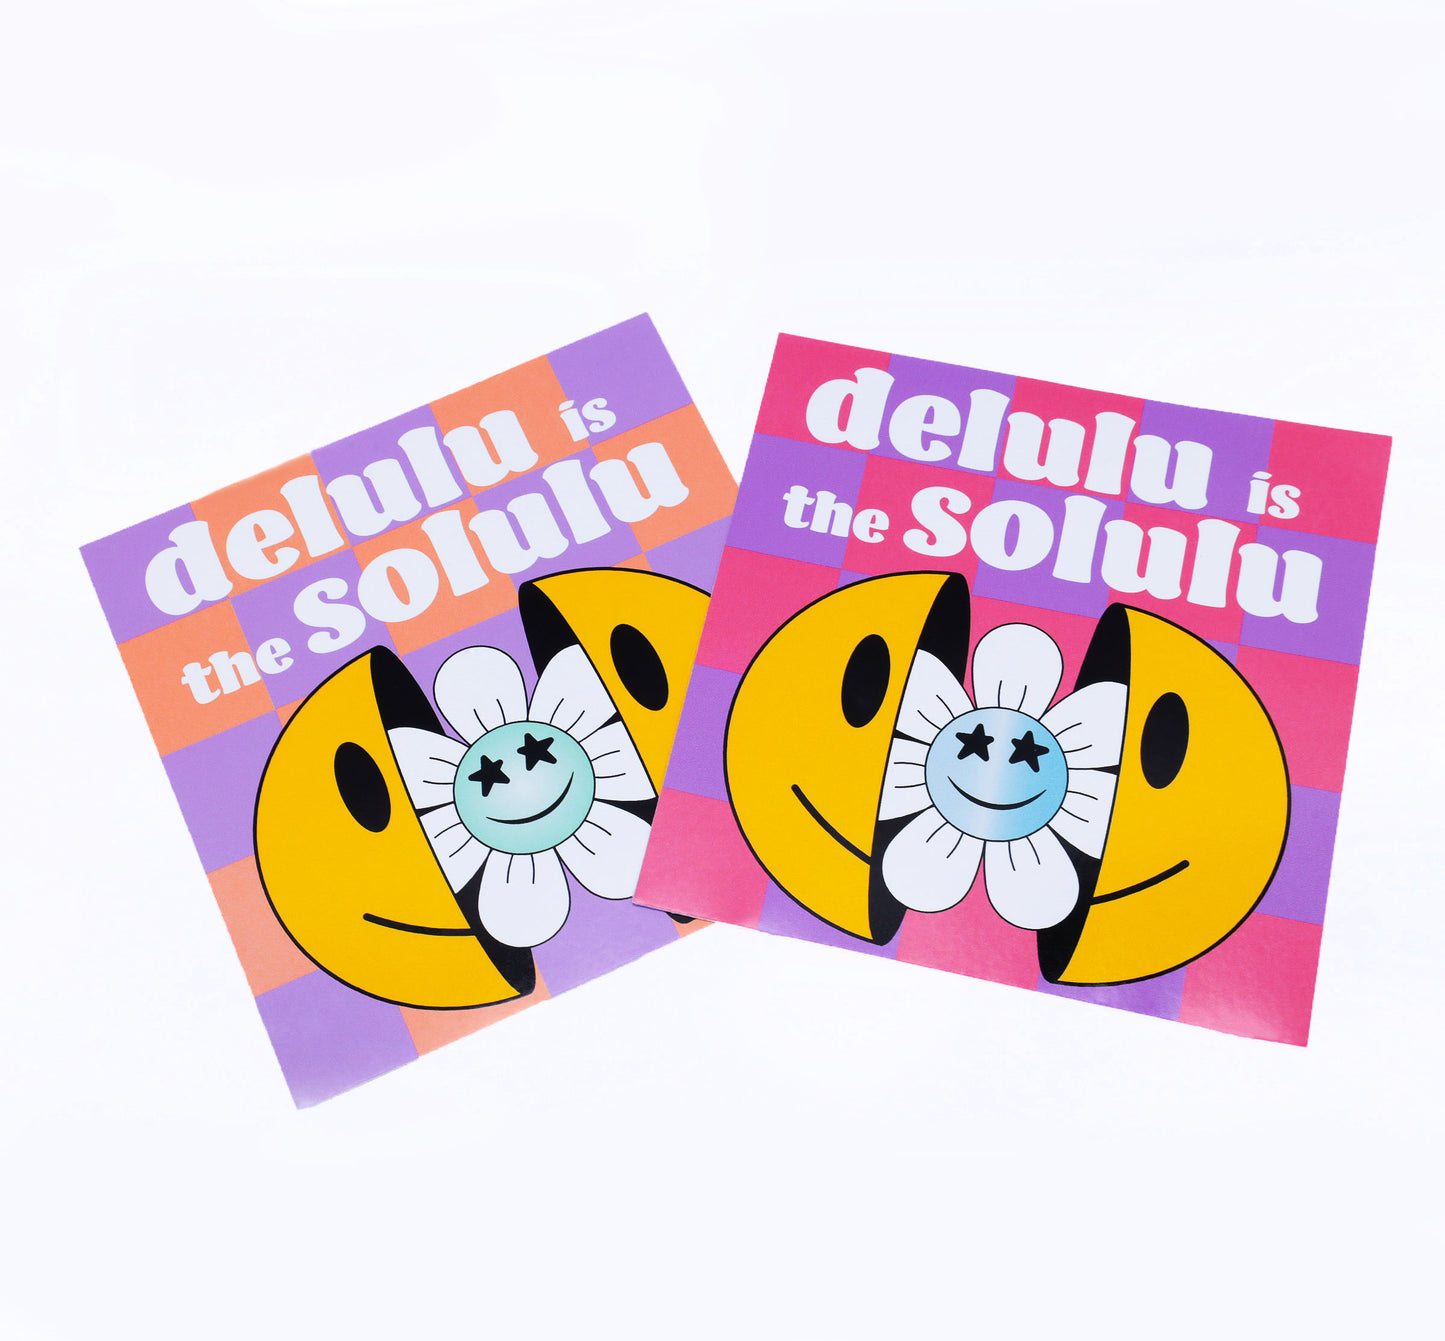 Delulu is the Solulu Sticker